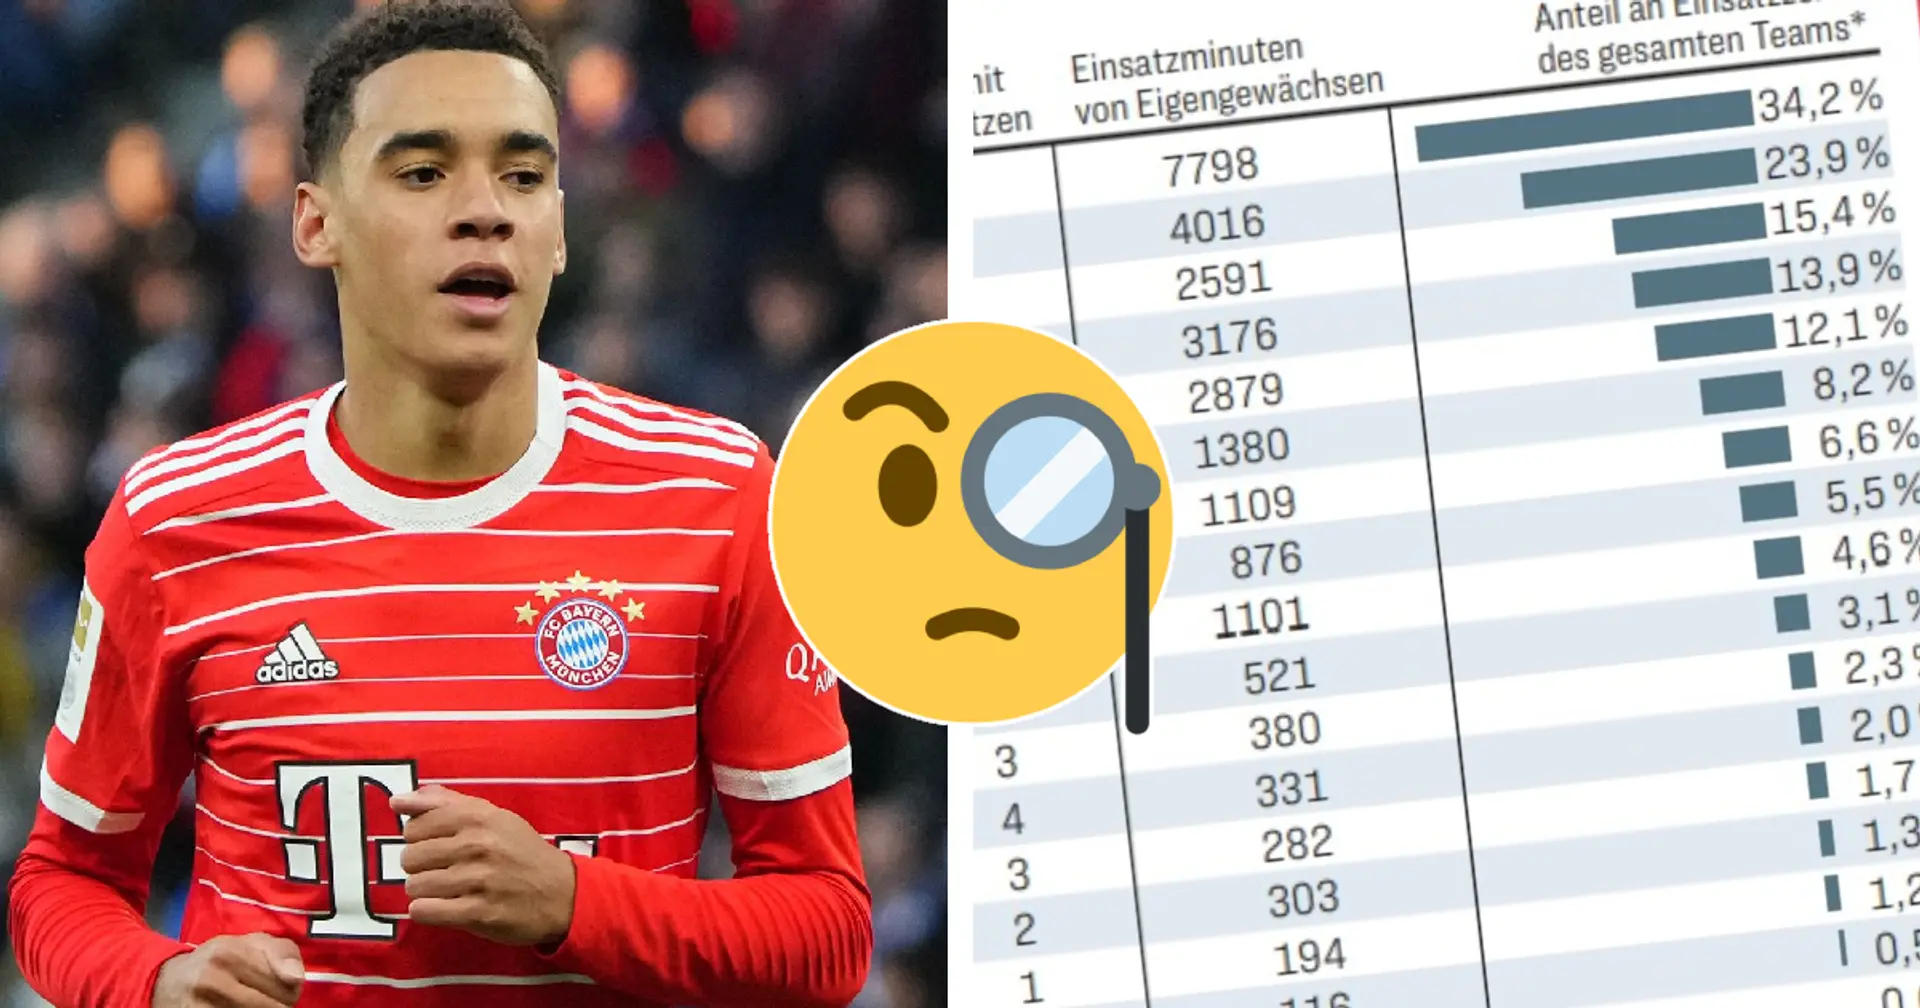 BuLi-Klubs mit größtem Anteil der Eigengewächse an Einsatzzeit des Teams - wo stehen die Bayern?